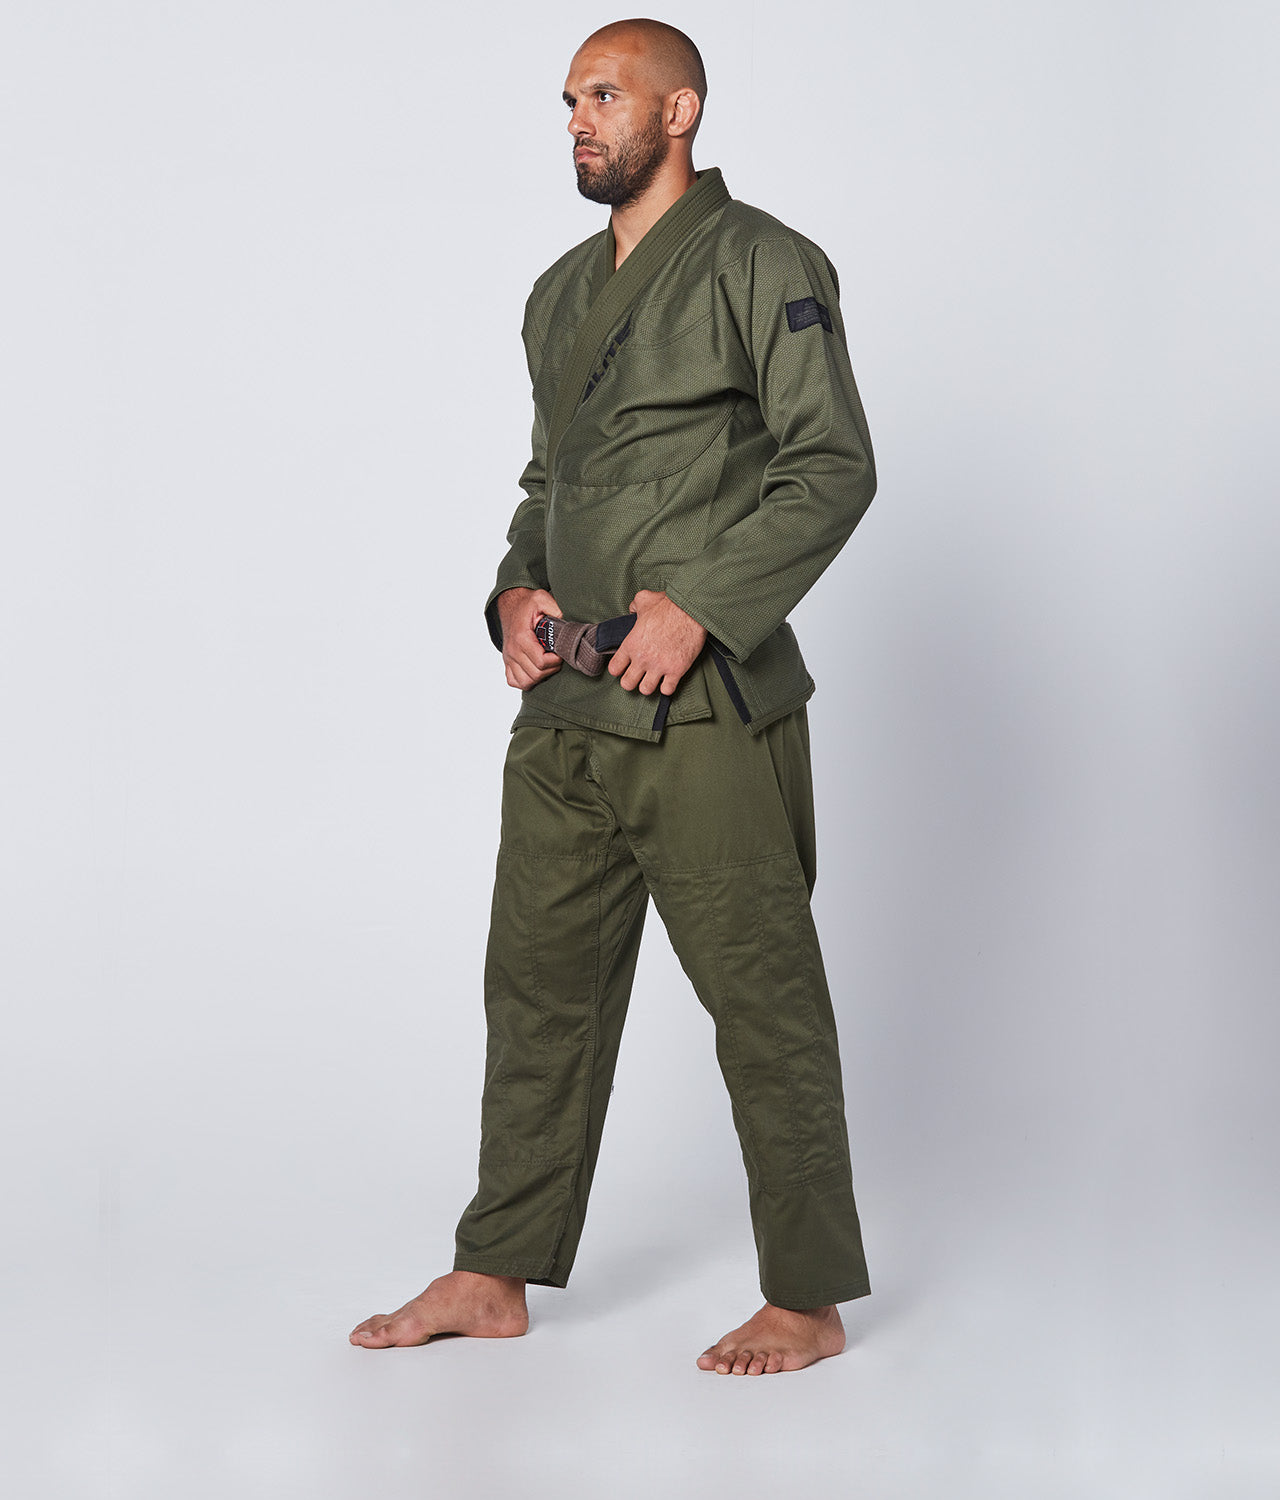 Elite Sports Men's Core Military Green Brazilian Jiu Jitsu BJJ Gi